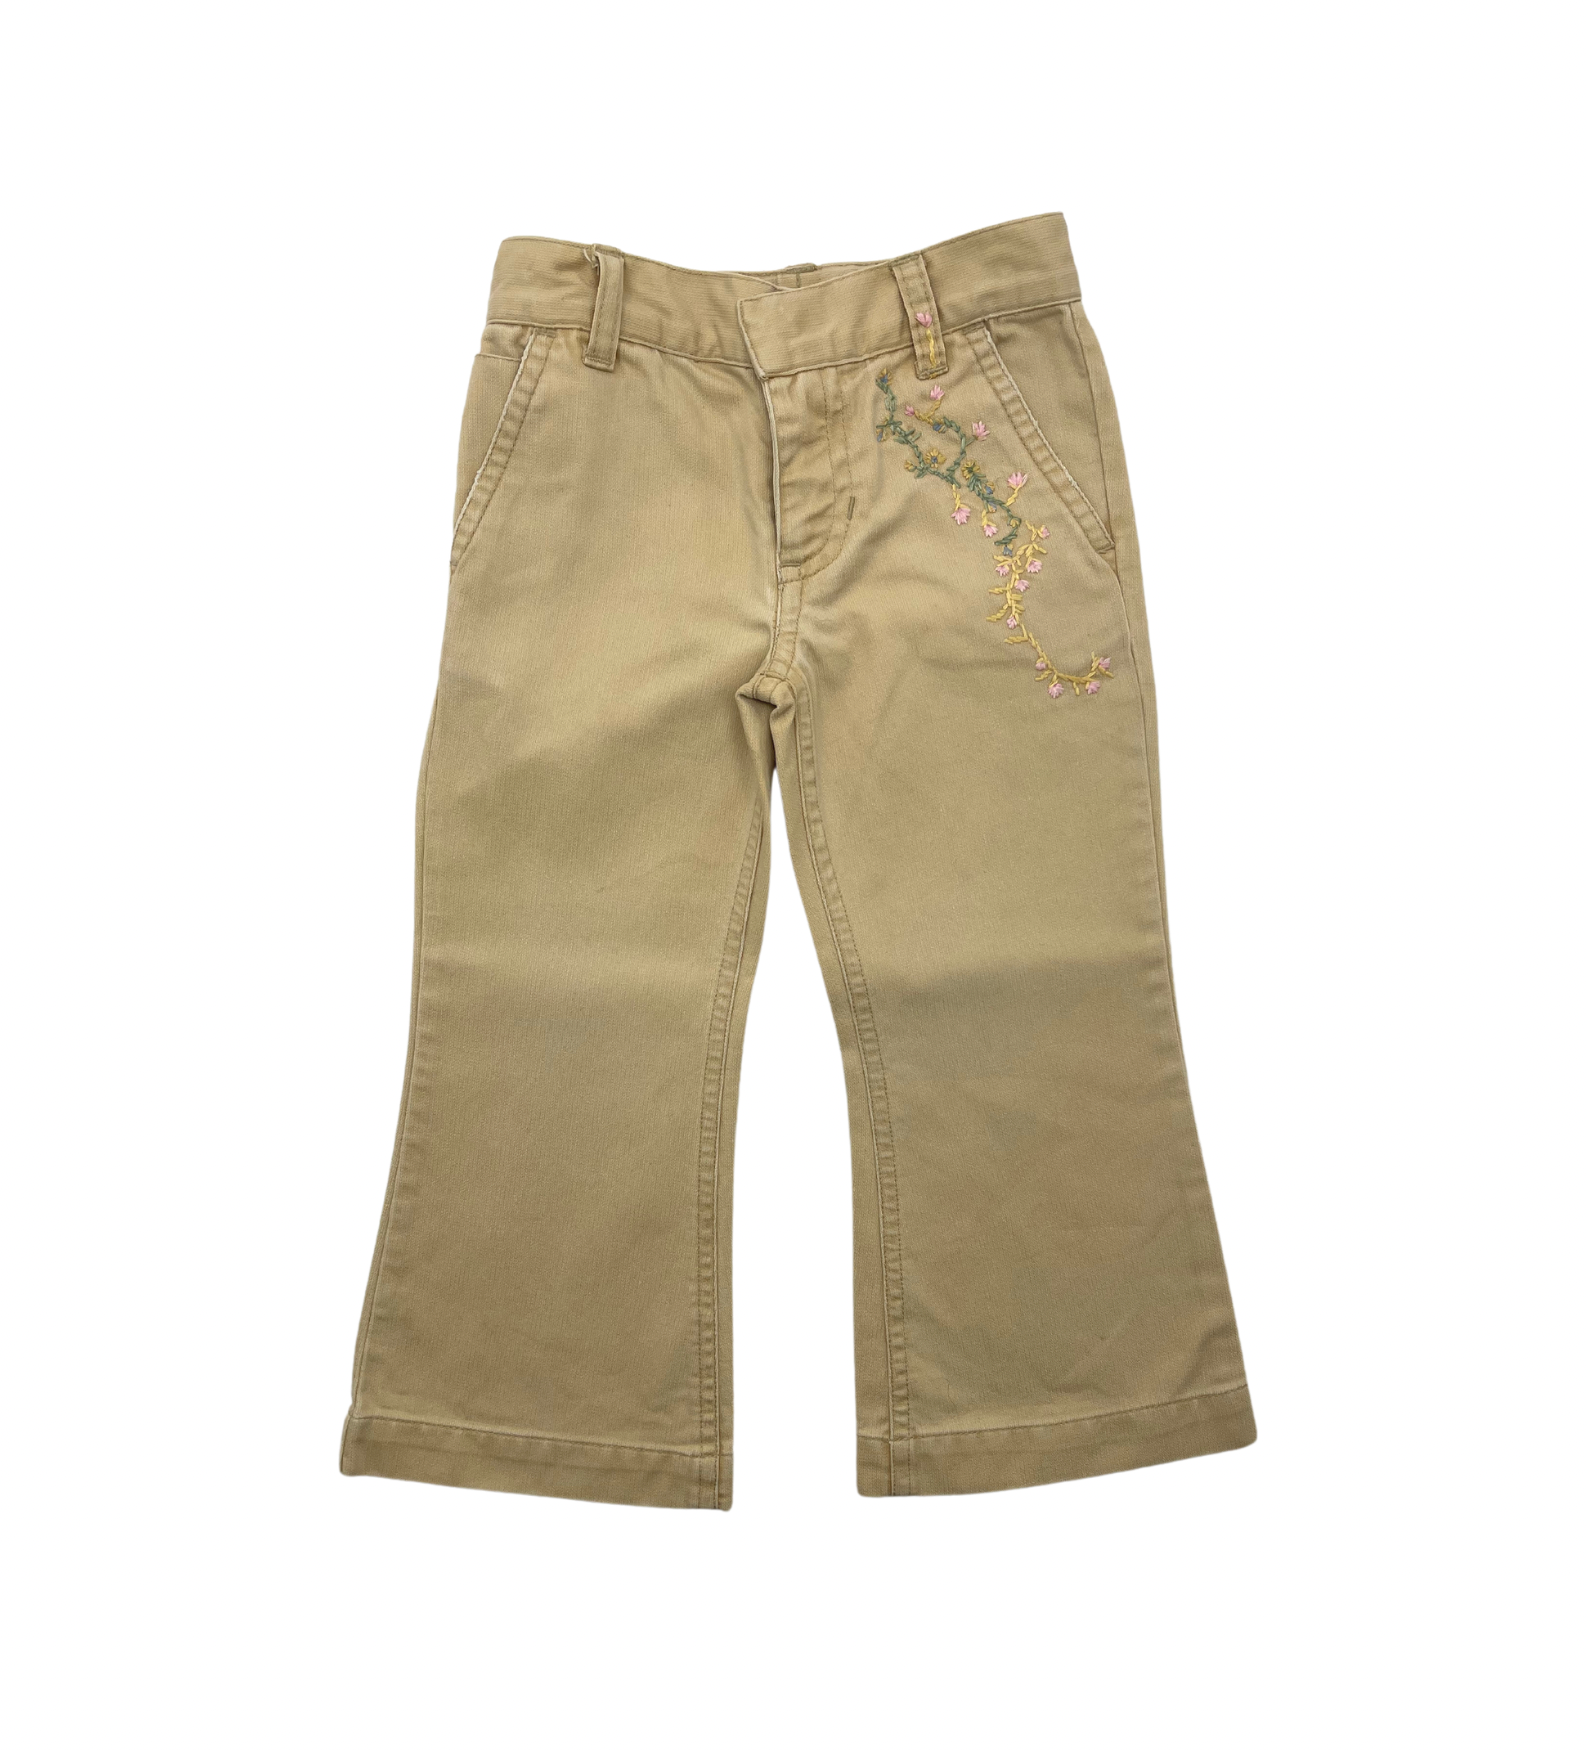 RALPH LAUREN - Pantalon beige avec broderies fleurs - 2 ans